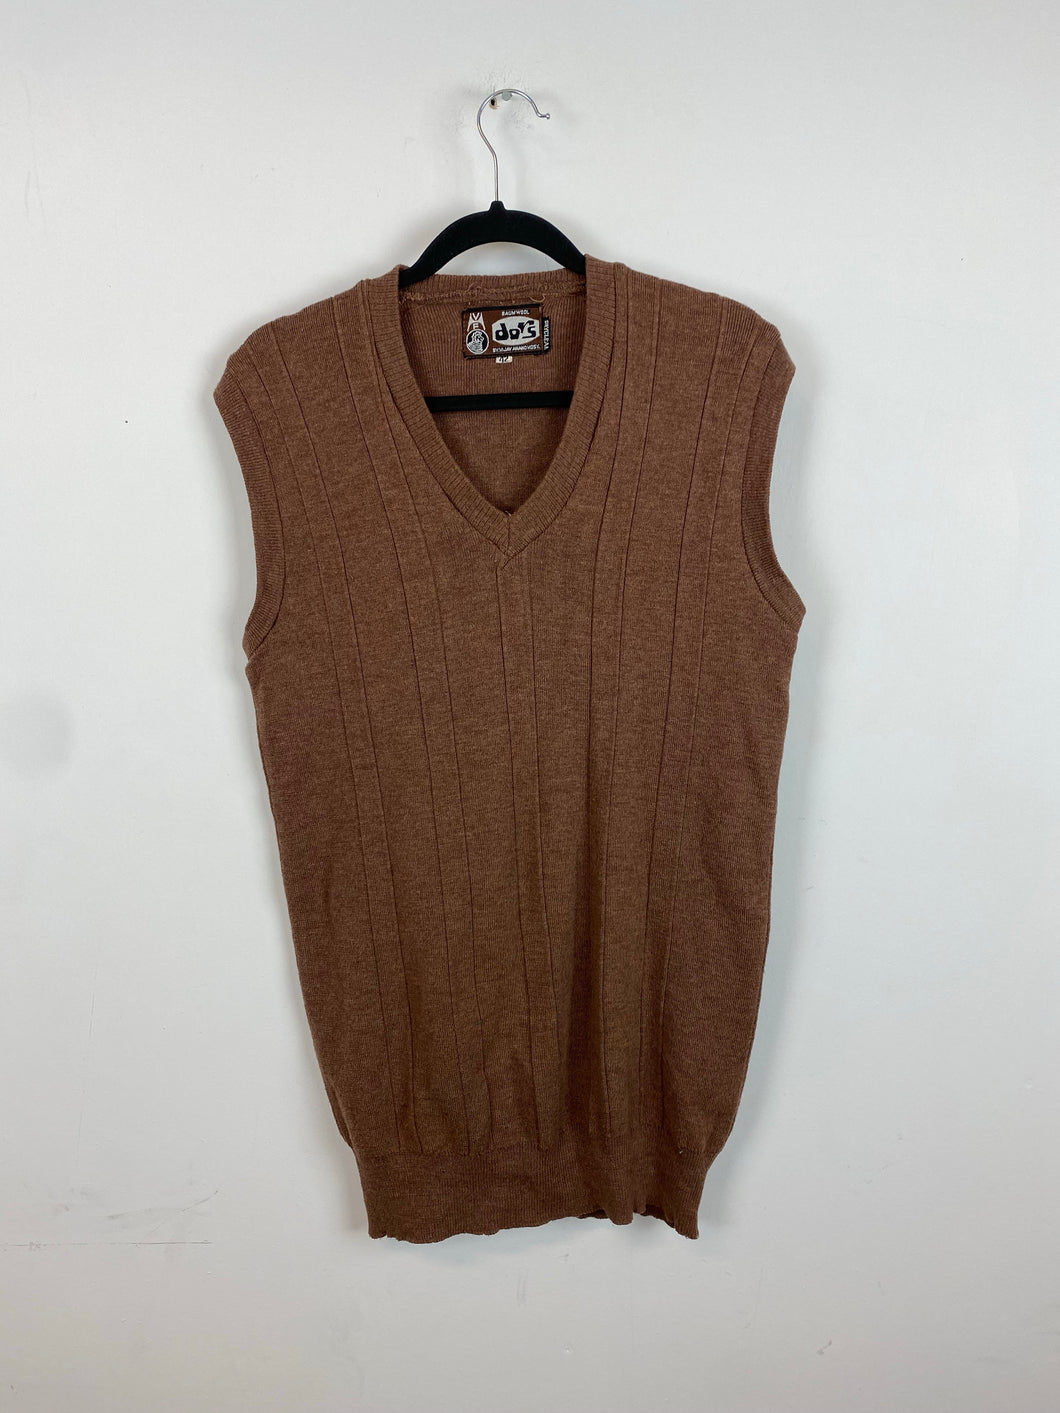 Vintage brown vest - L